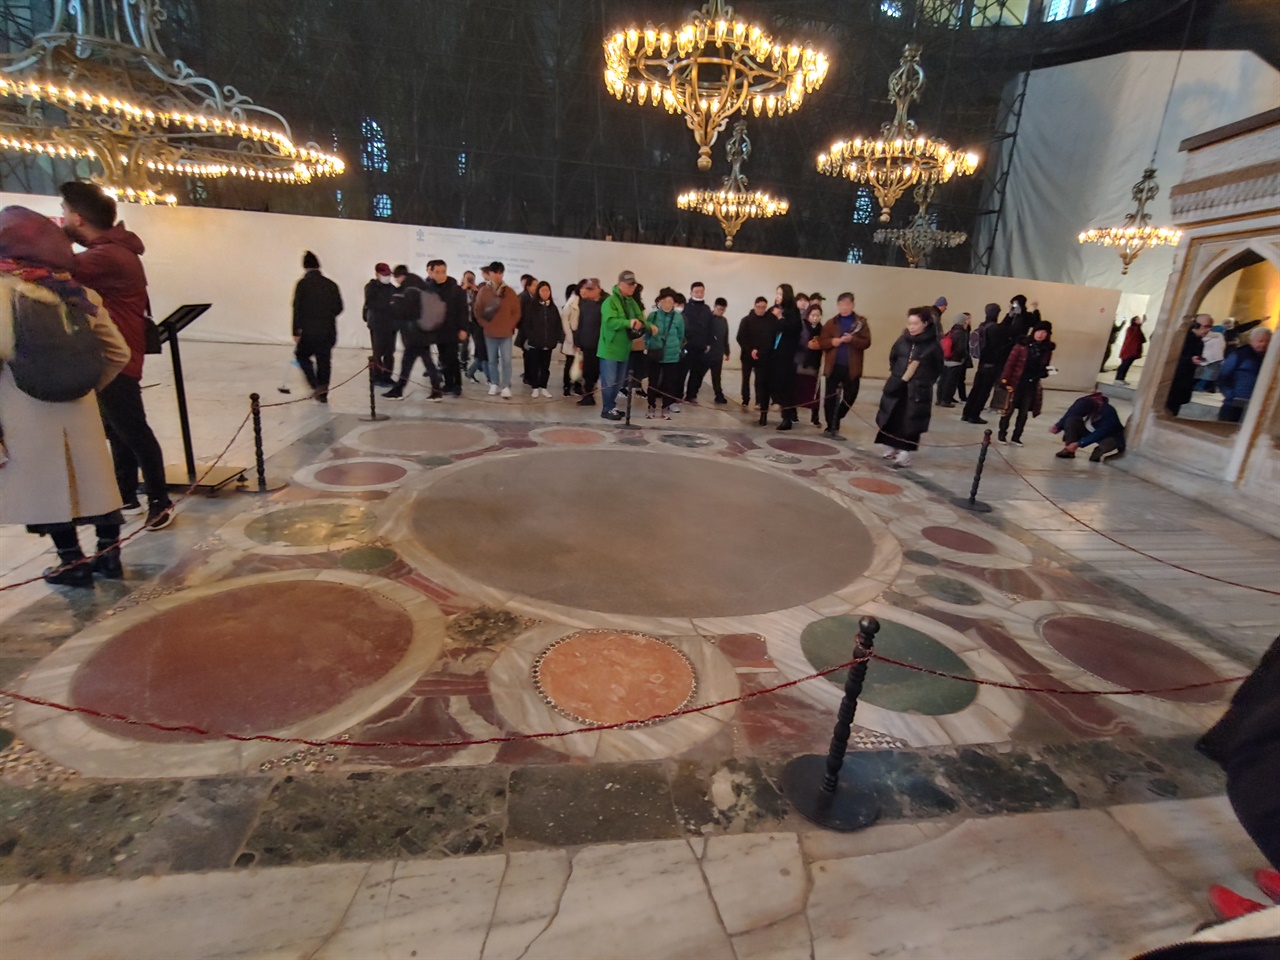 중앙 바닥에 녹색, 붉은색의 대리석 석판들이 모자이크 되어 있는 ‘우주의 배꼽’이라고 하는 오푸스 알렉산디리움(Opus Alexandrium). 일종의 중국인들이 품었던 중화사상과 같은 표식이다.